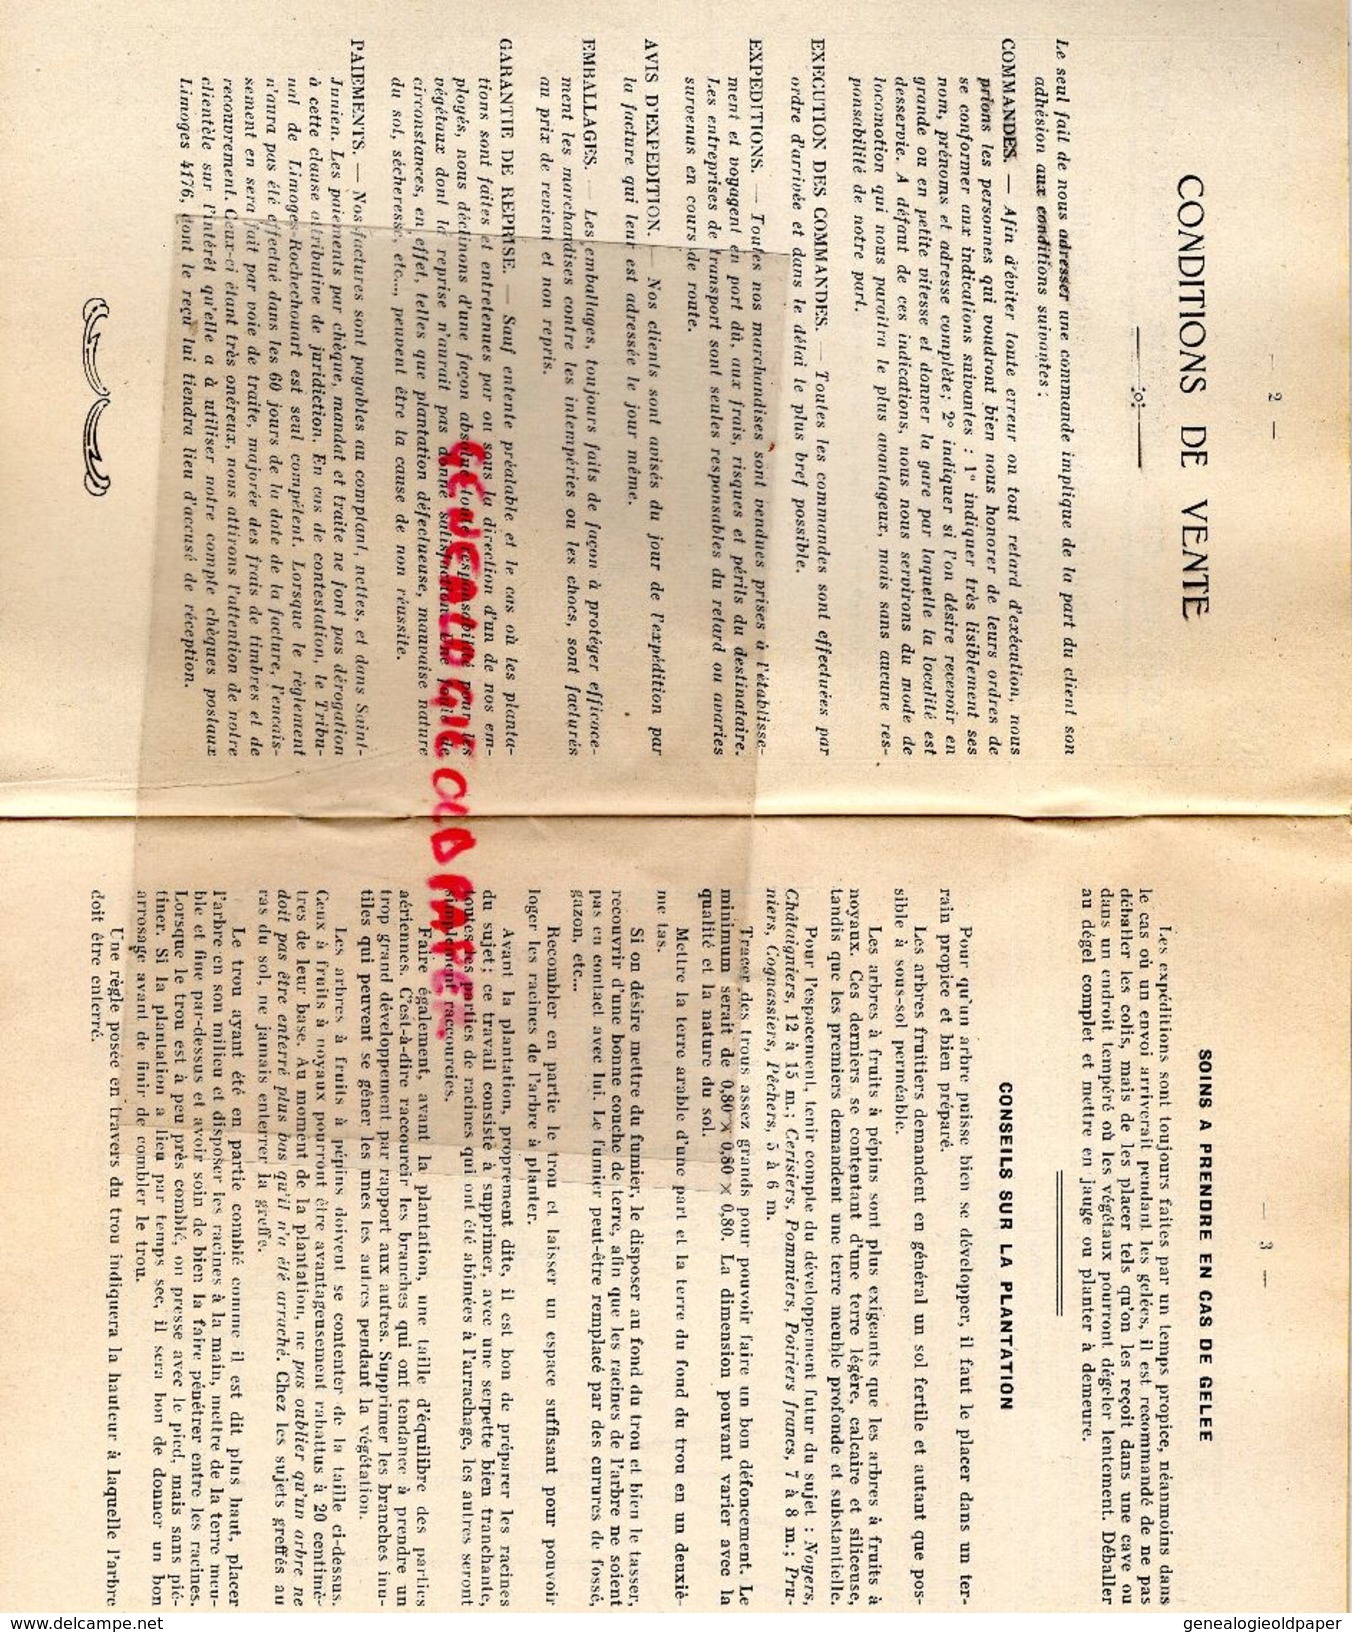 87-ST SAINT JUNIEN-RARE CATALOGUE DEGLANE DESBORDES-HORTICULTURE PEPINIERES-1938-1939-IMPRIMERIE DUBOUCHET ROCHECHOUART - Documenti Storici